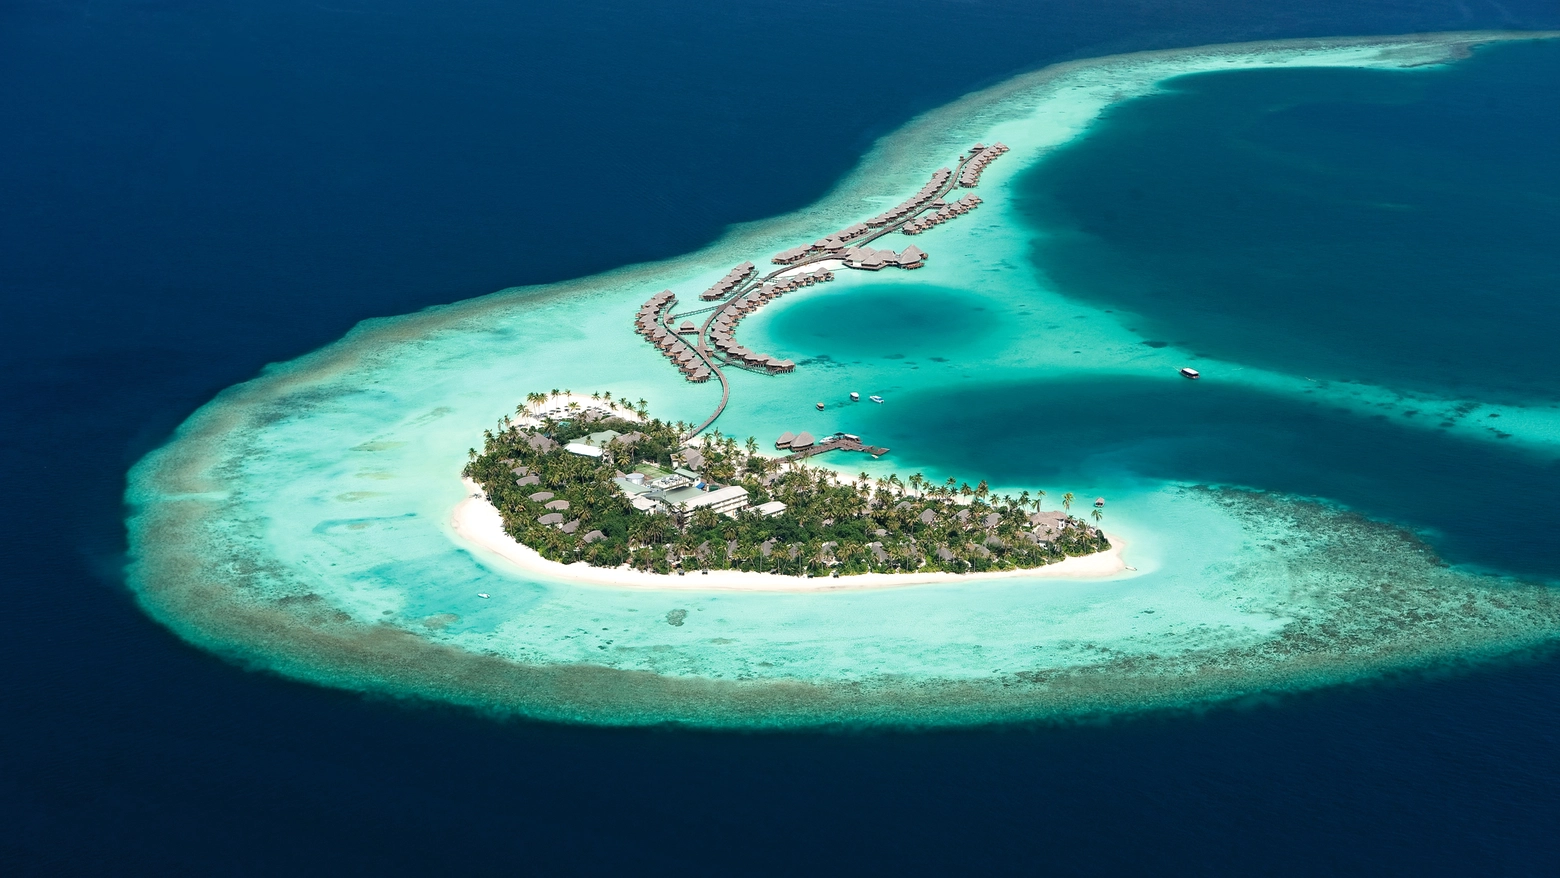 Alla scoperta dell'atollo di Ari in ‘bassa stagione’. Tutto quello che c'è da sapere per una vacanza piedi nell’acqua nell’oceano Indiano tra relax, natura e splendide immersioni